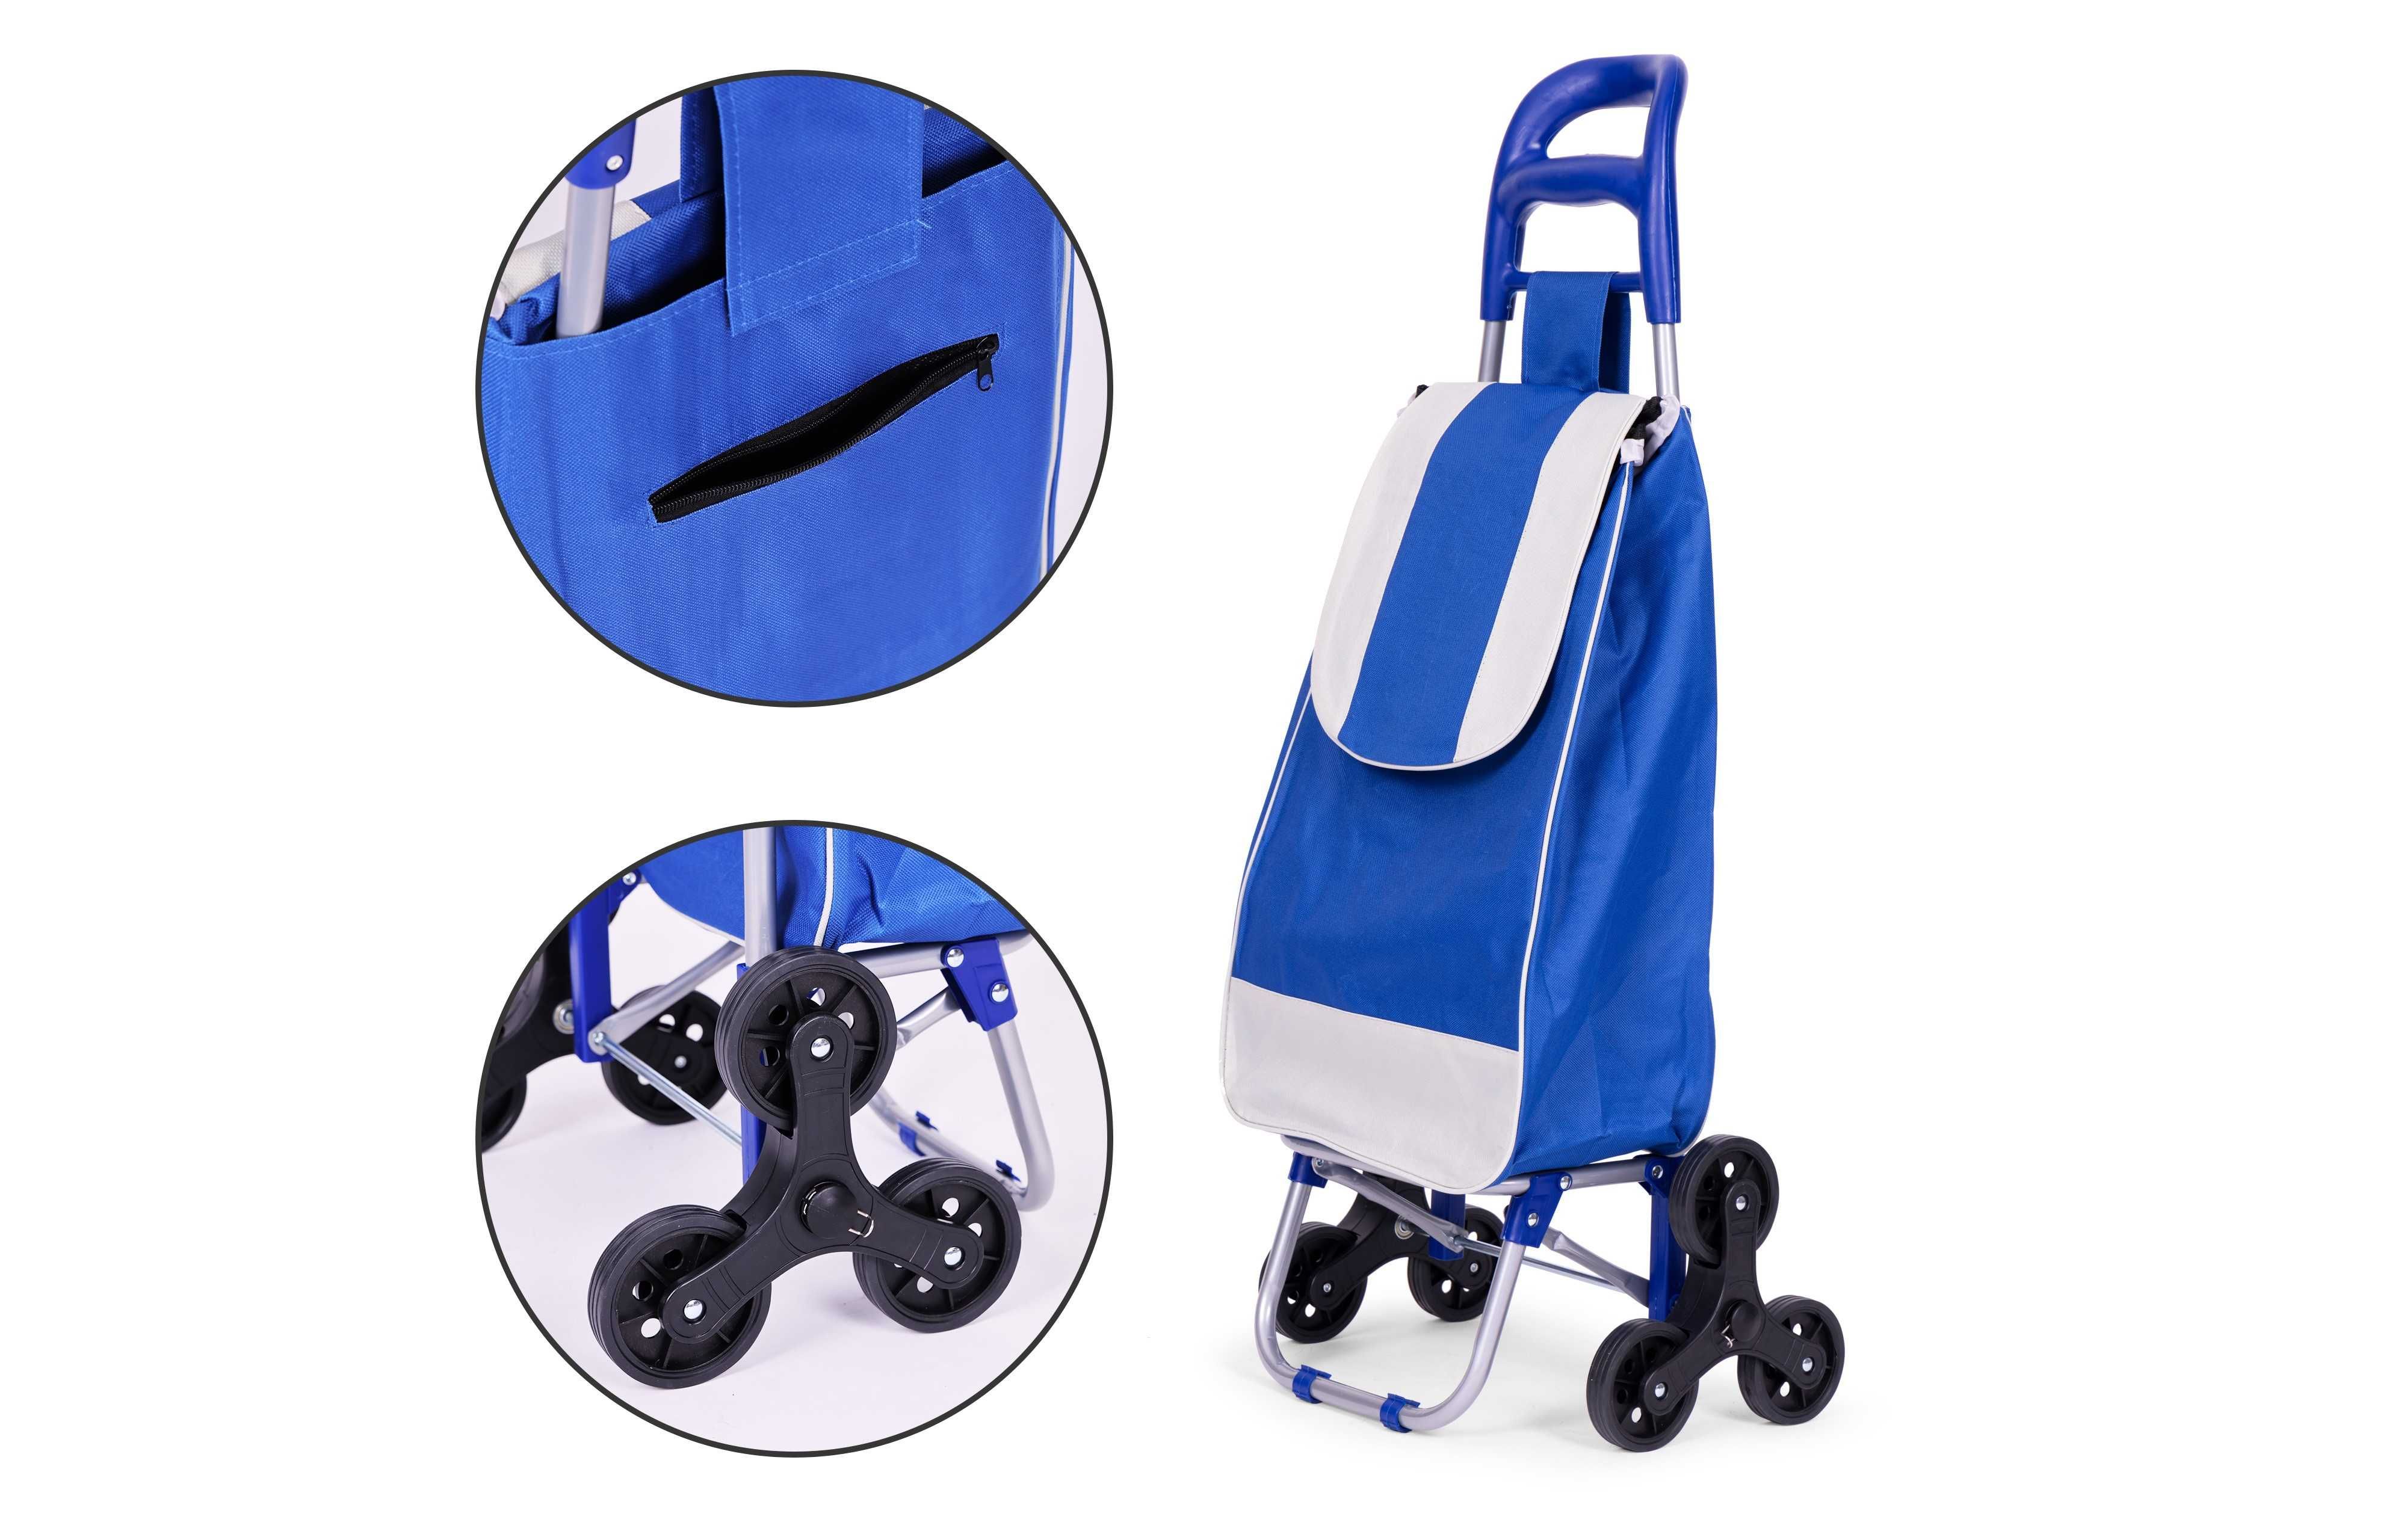 Wózek na zakupy torba 25l na 6 kółkach, niebieski # PGJSFC015